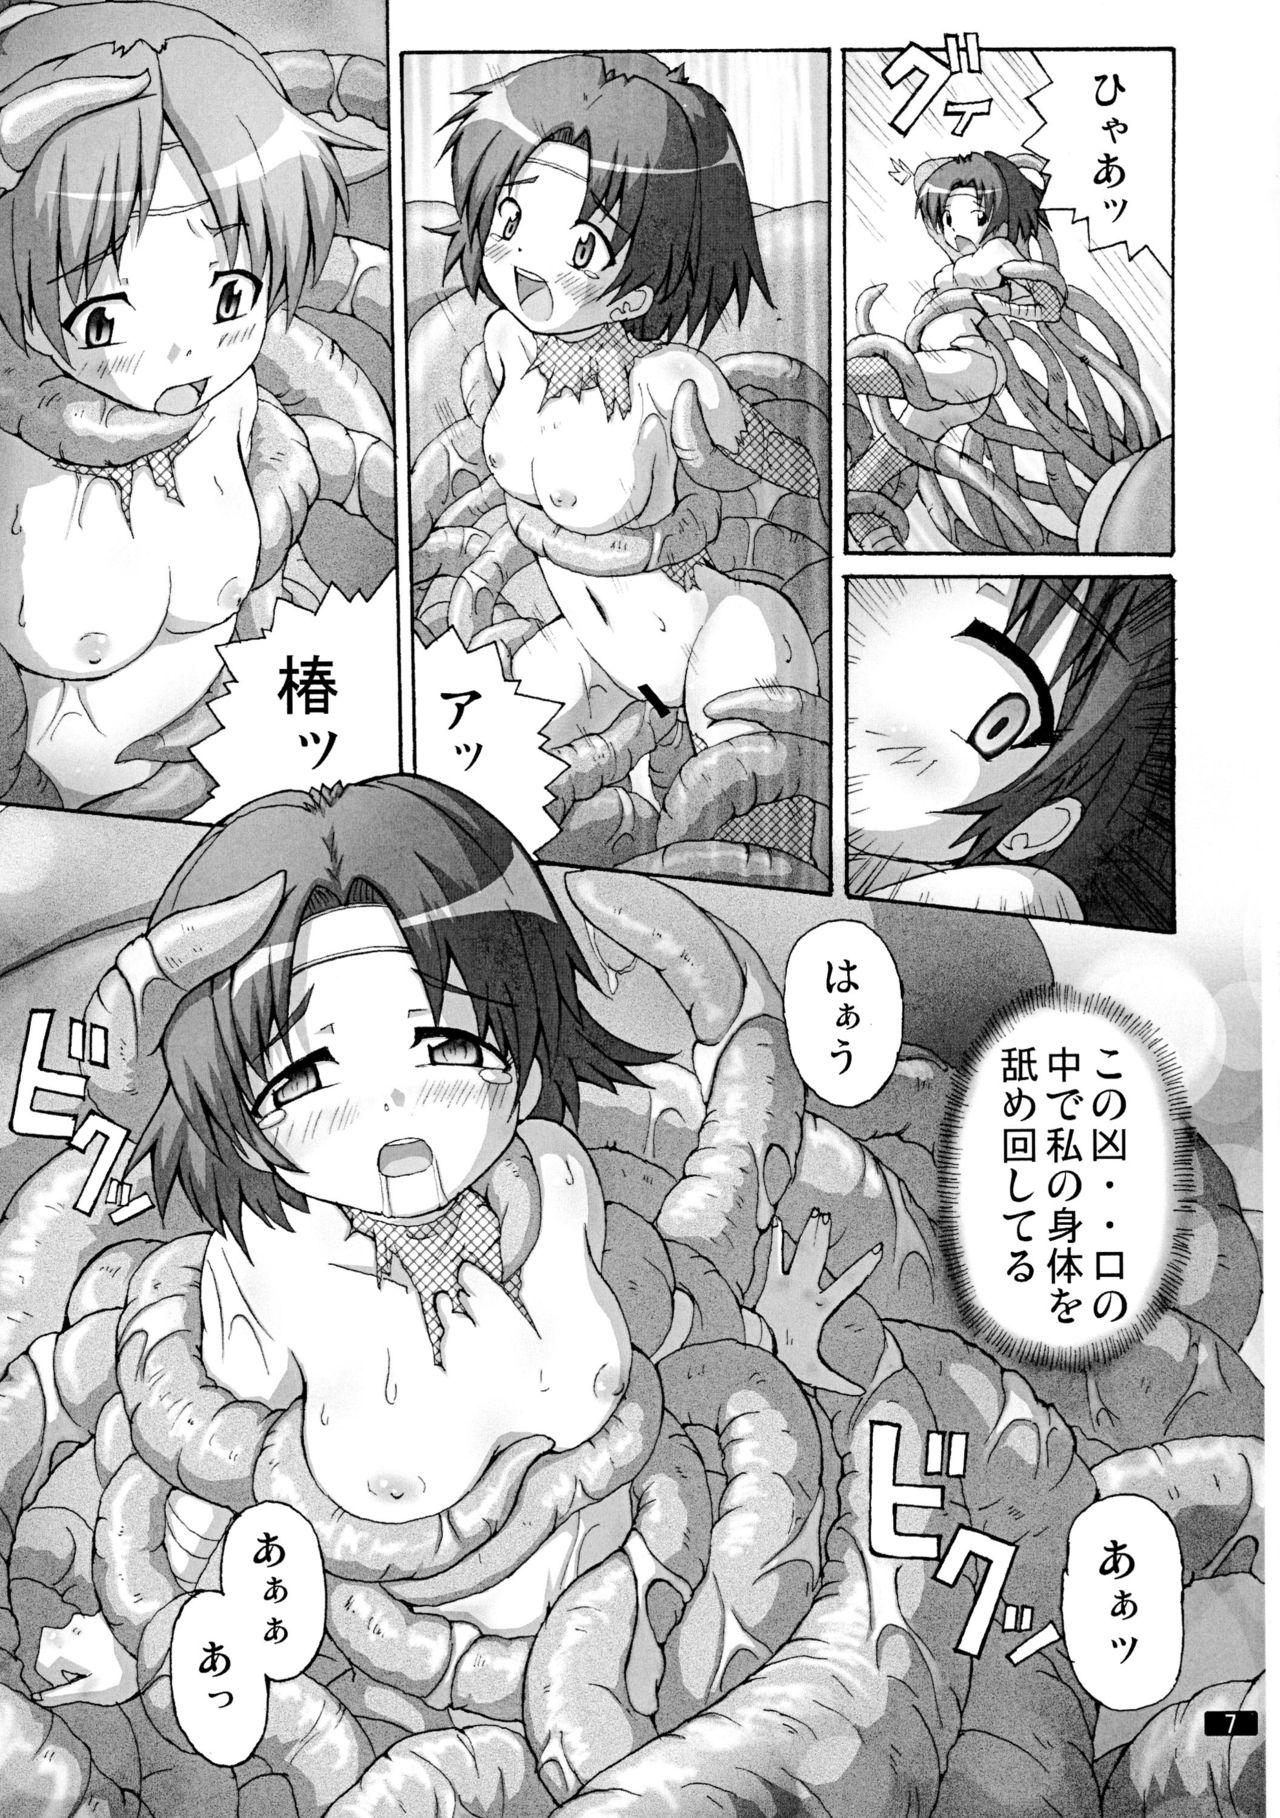 Anime Kaiun no Taimashi Nozomi 5 1/ 2 Highschool - Page 7